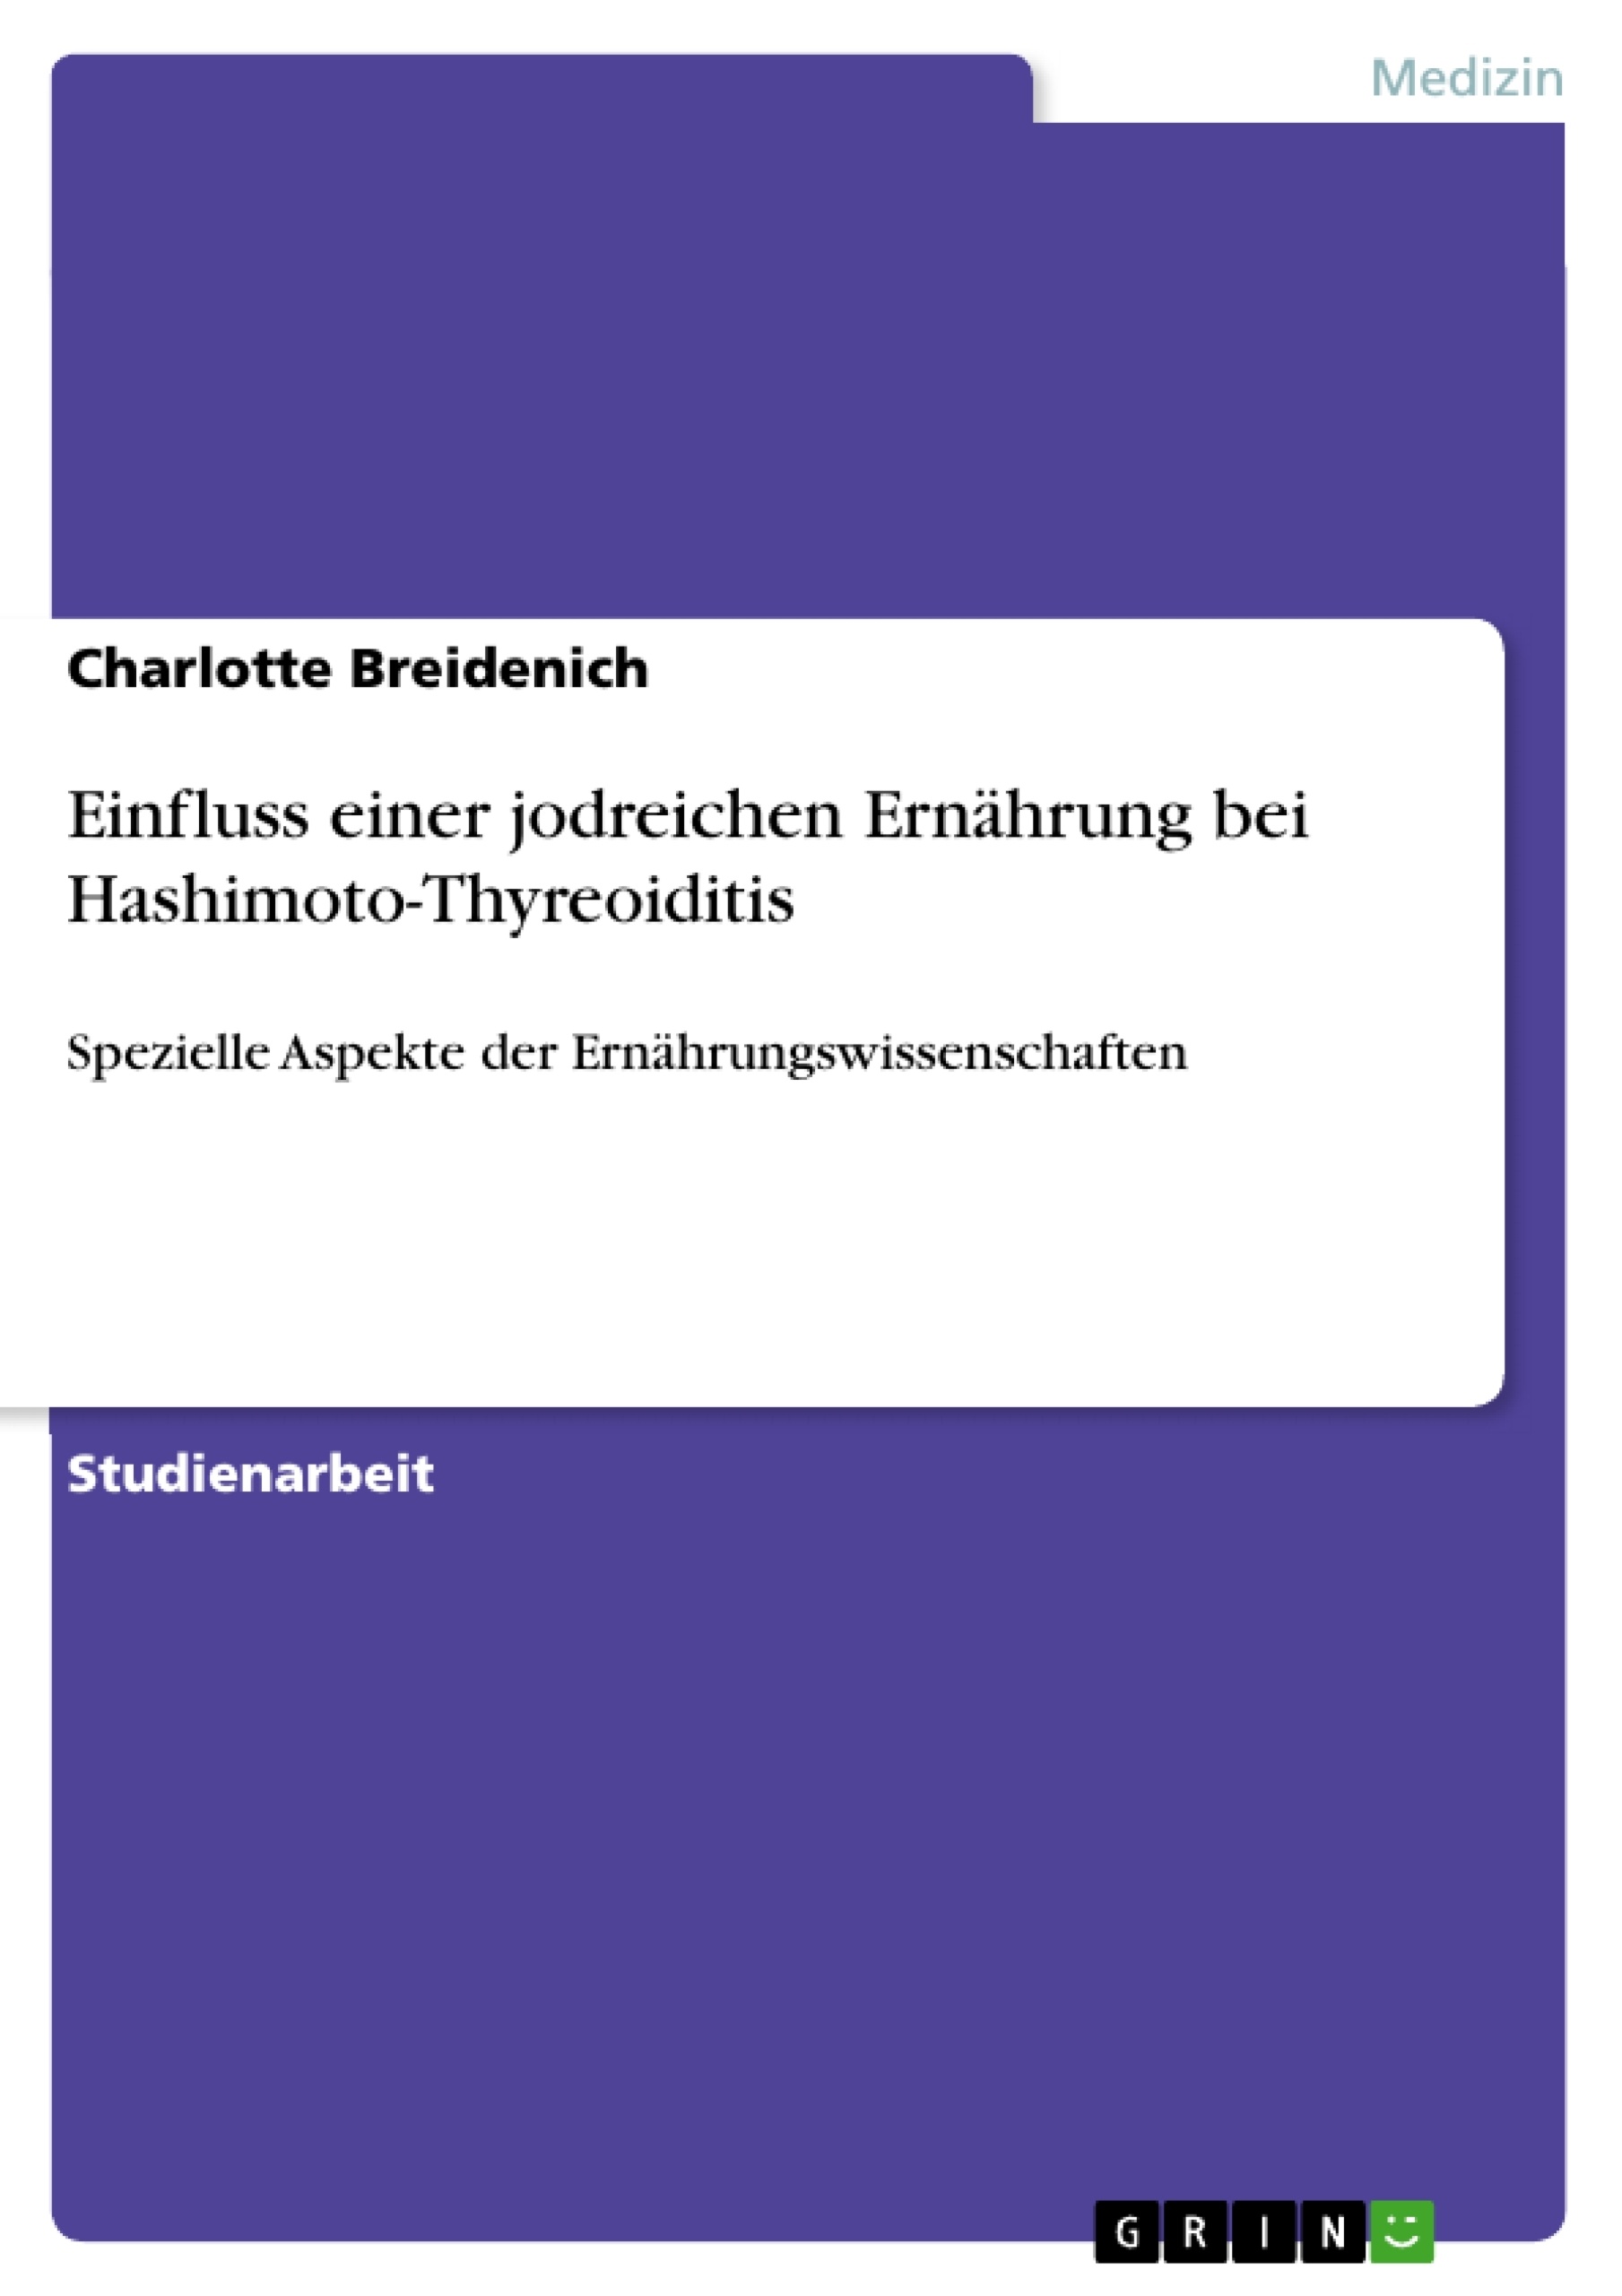 Title: Einfluss einer jodreichen Ernährung bei Hashimoto-Thyreoiditis